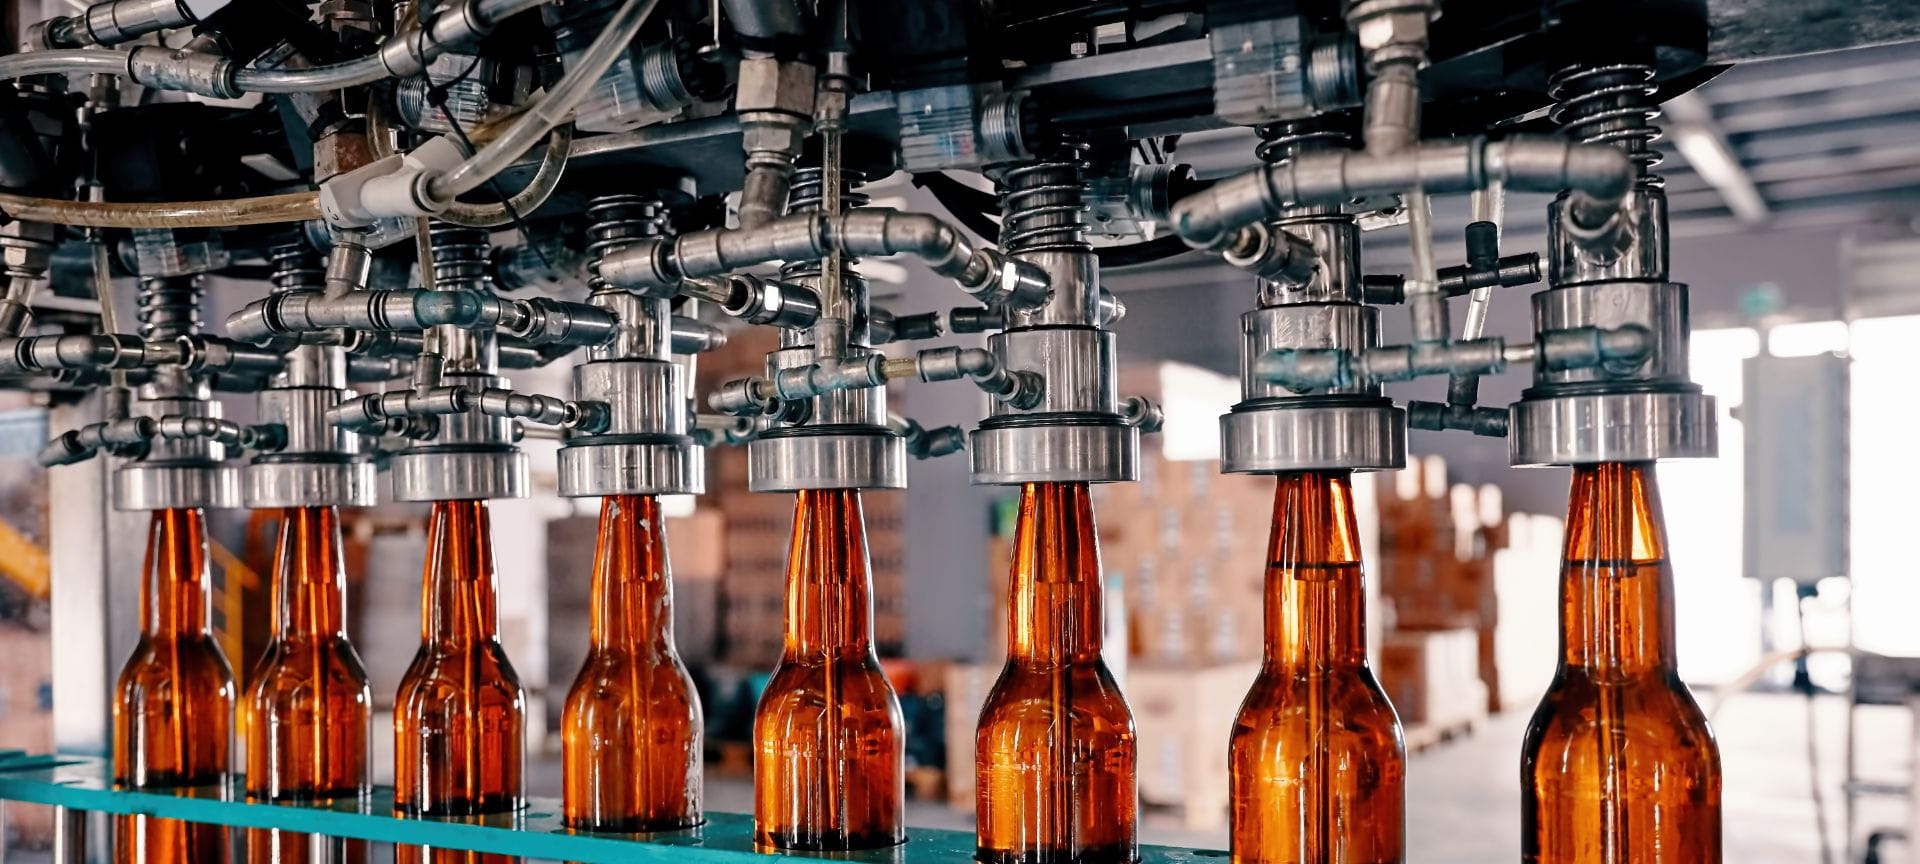 Filling up bottles in factory